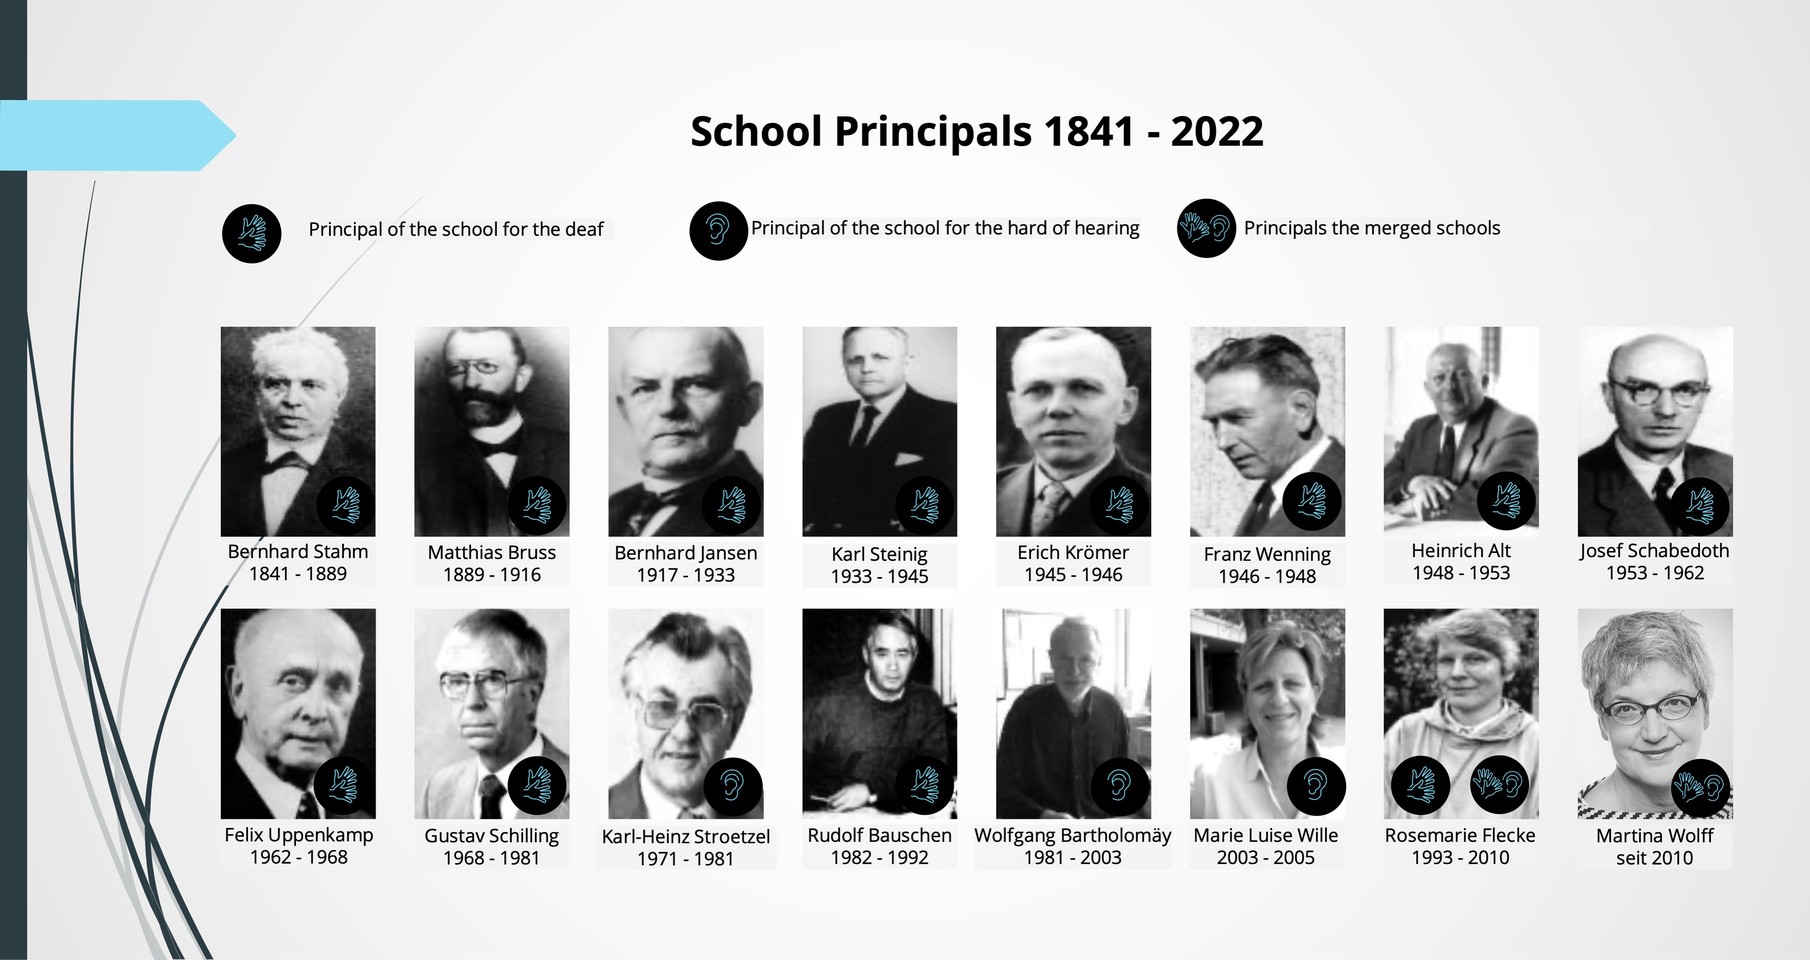 16 schwarz-weiß Fotografien von allen Schulleitern der Schule seit 1841 (13 Männer, 3 Frauen)